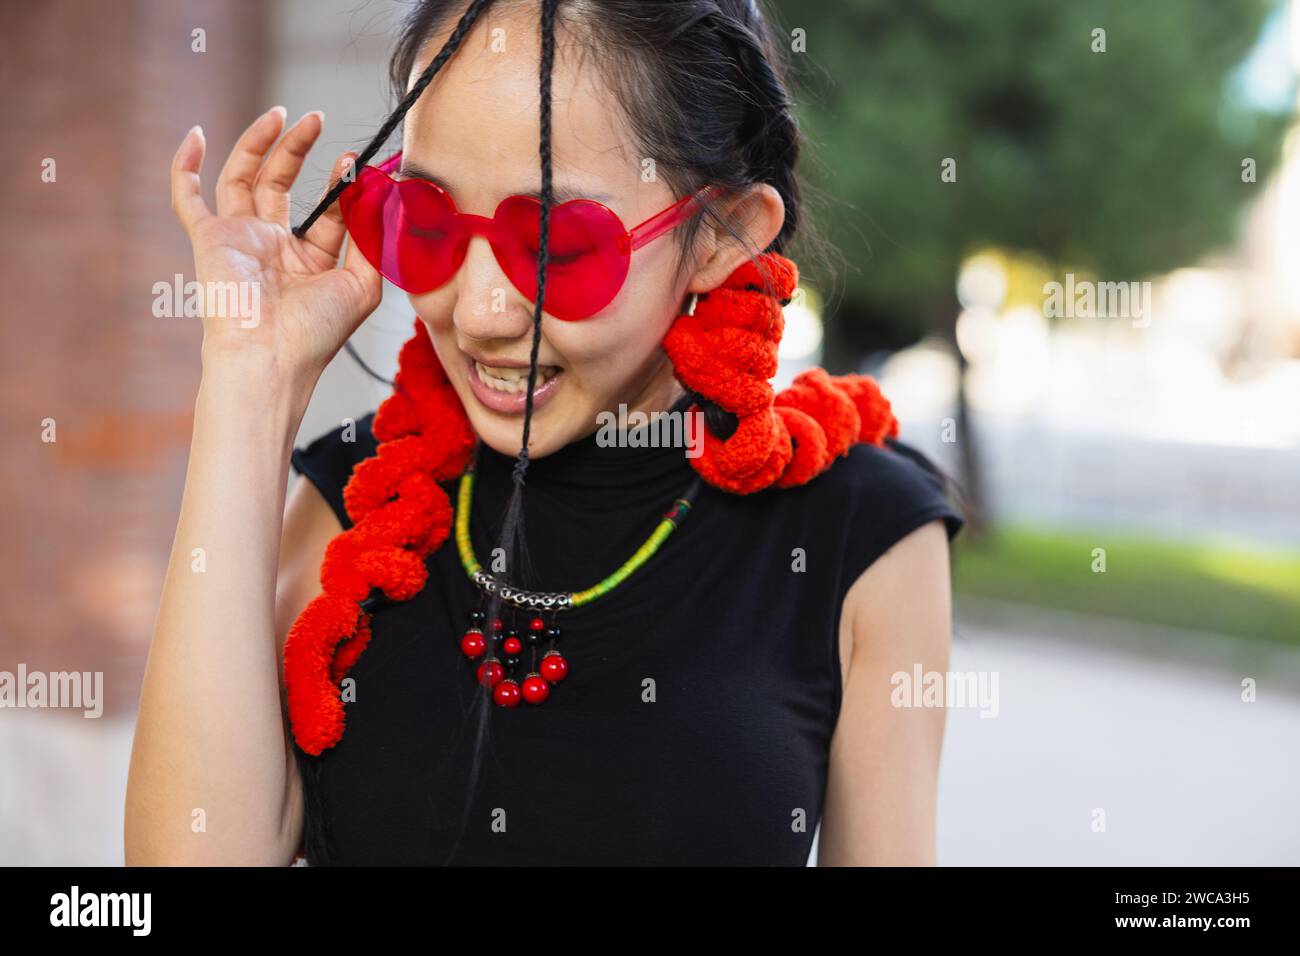 'Une photo franche d'une danseuse de rue souriante tout en ajustant ses lunettes de soleil rouges en forme de cœur, ornées d'accessoires rouges éclatants. Banque D'Images